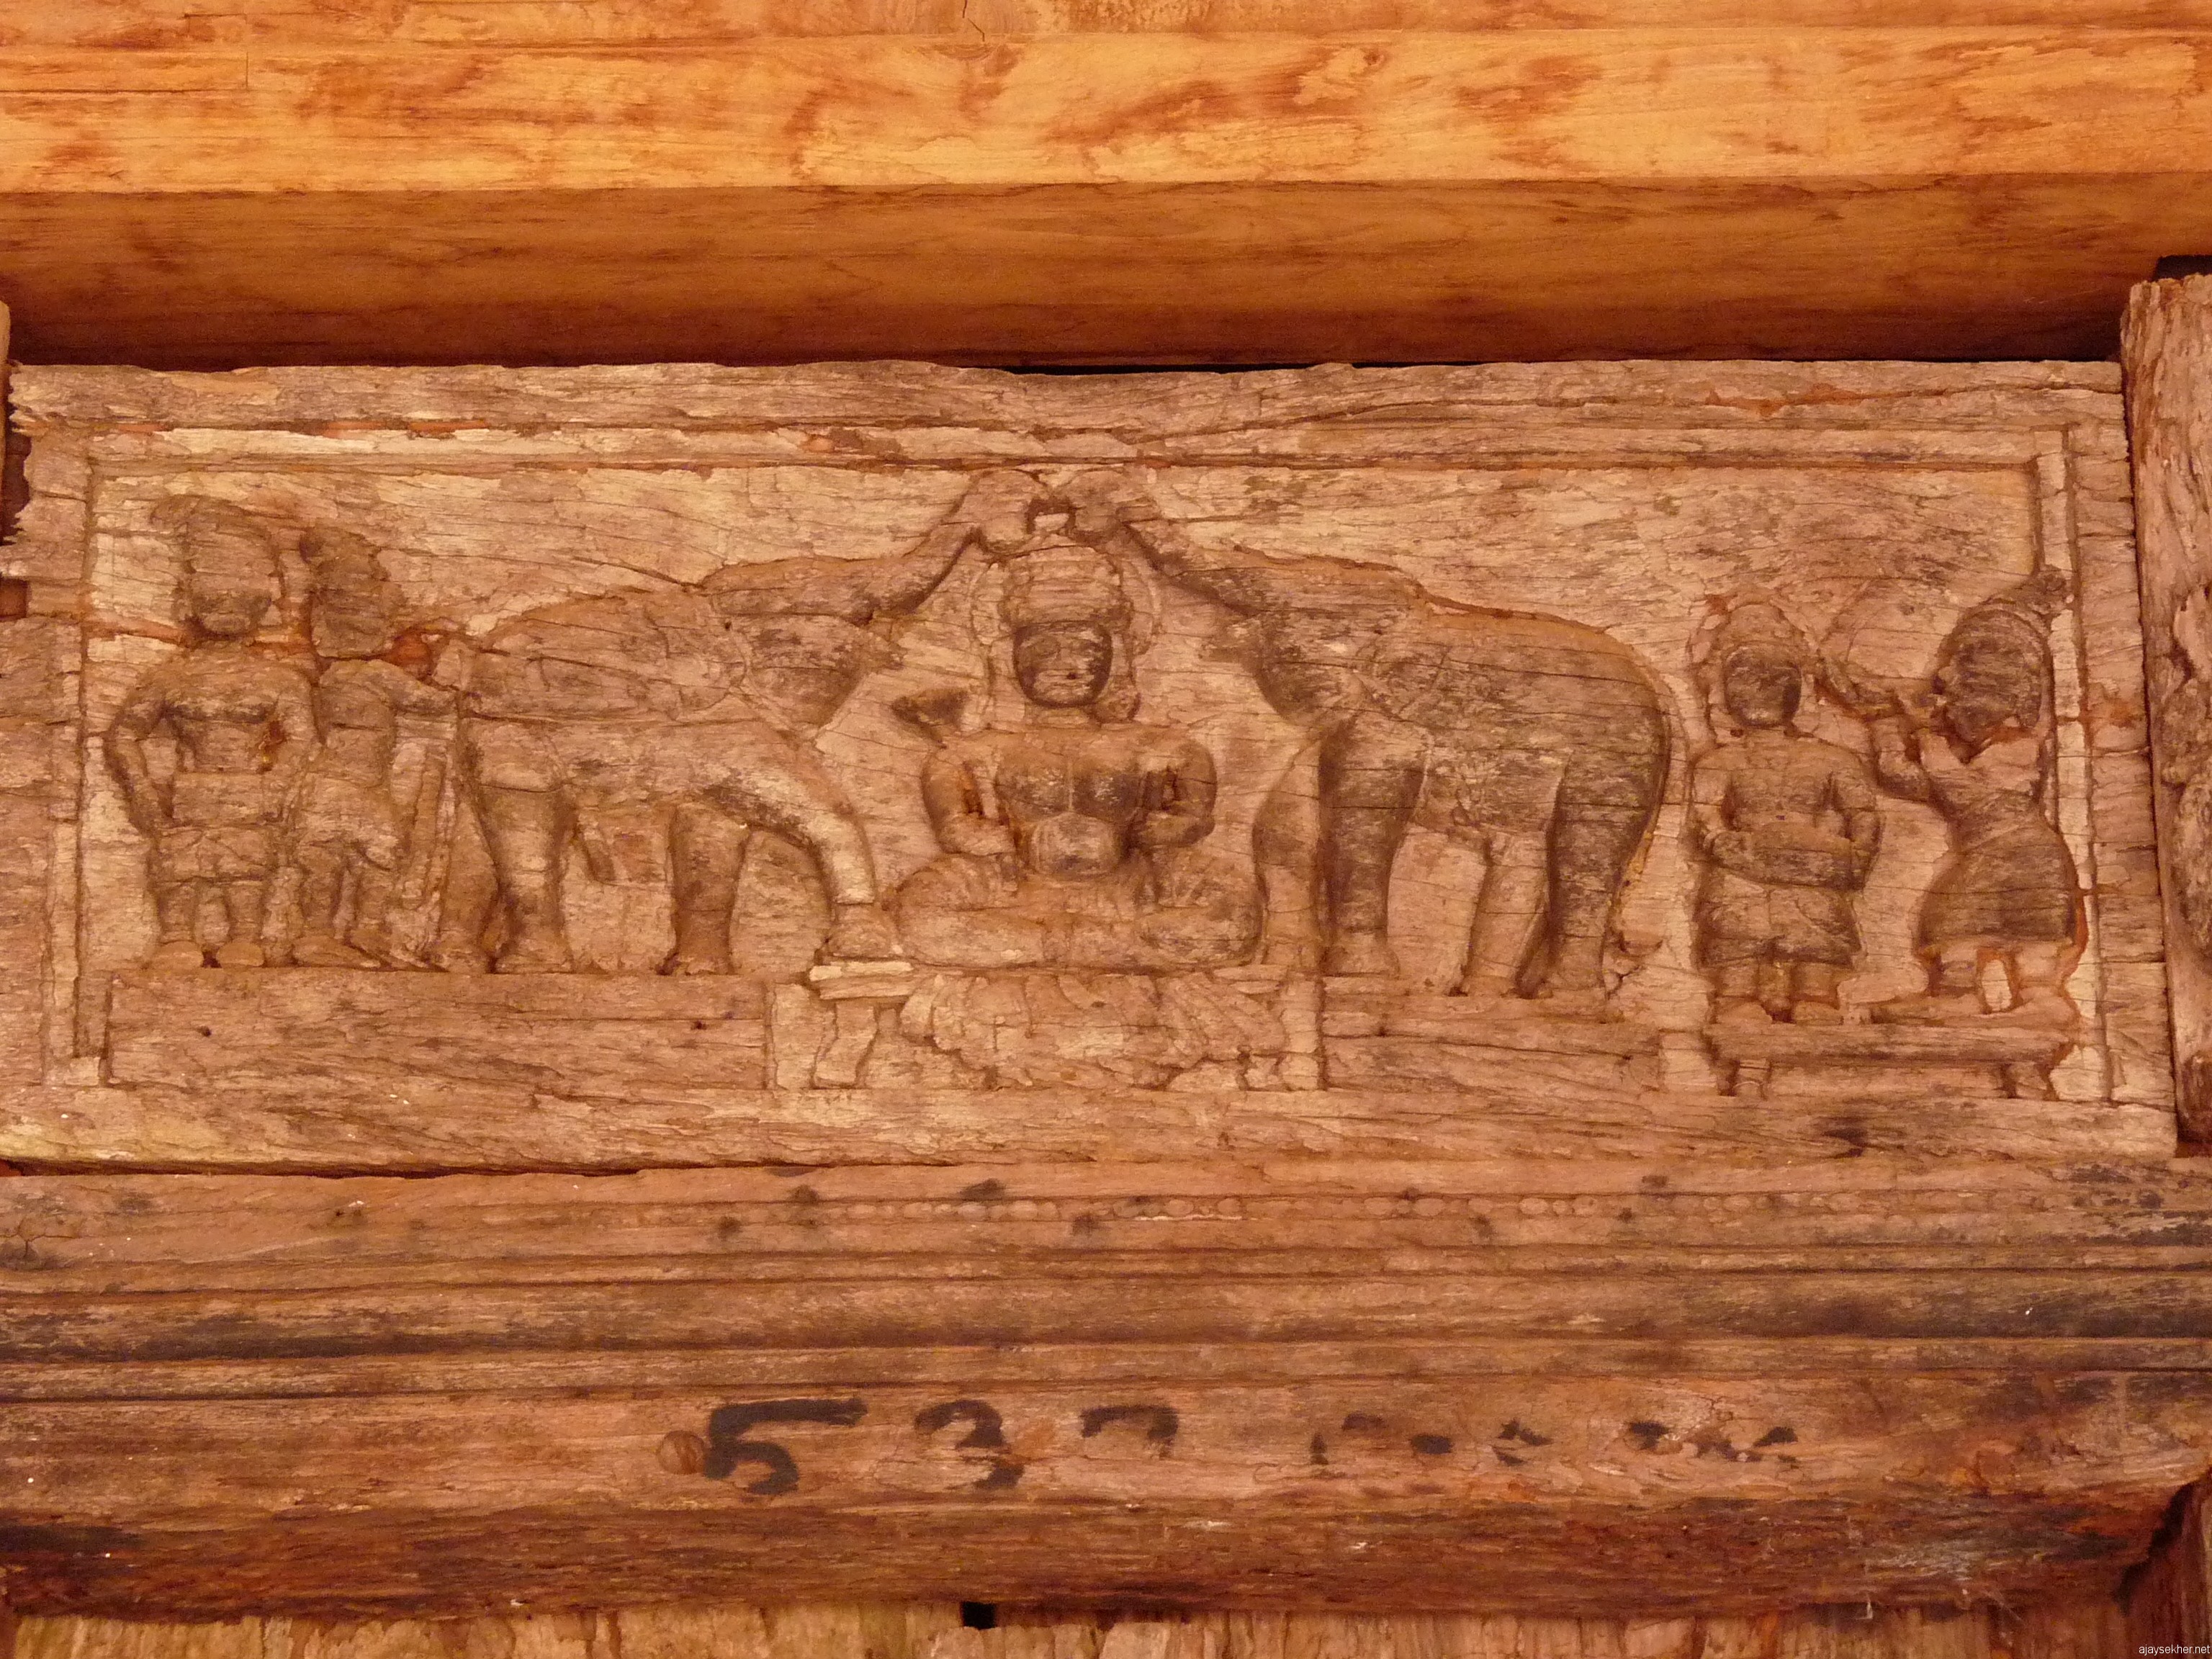 Carving in Changampally Kalari